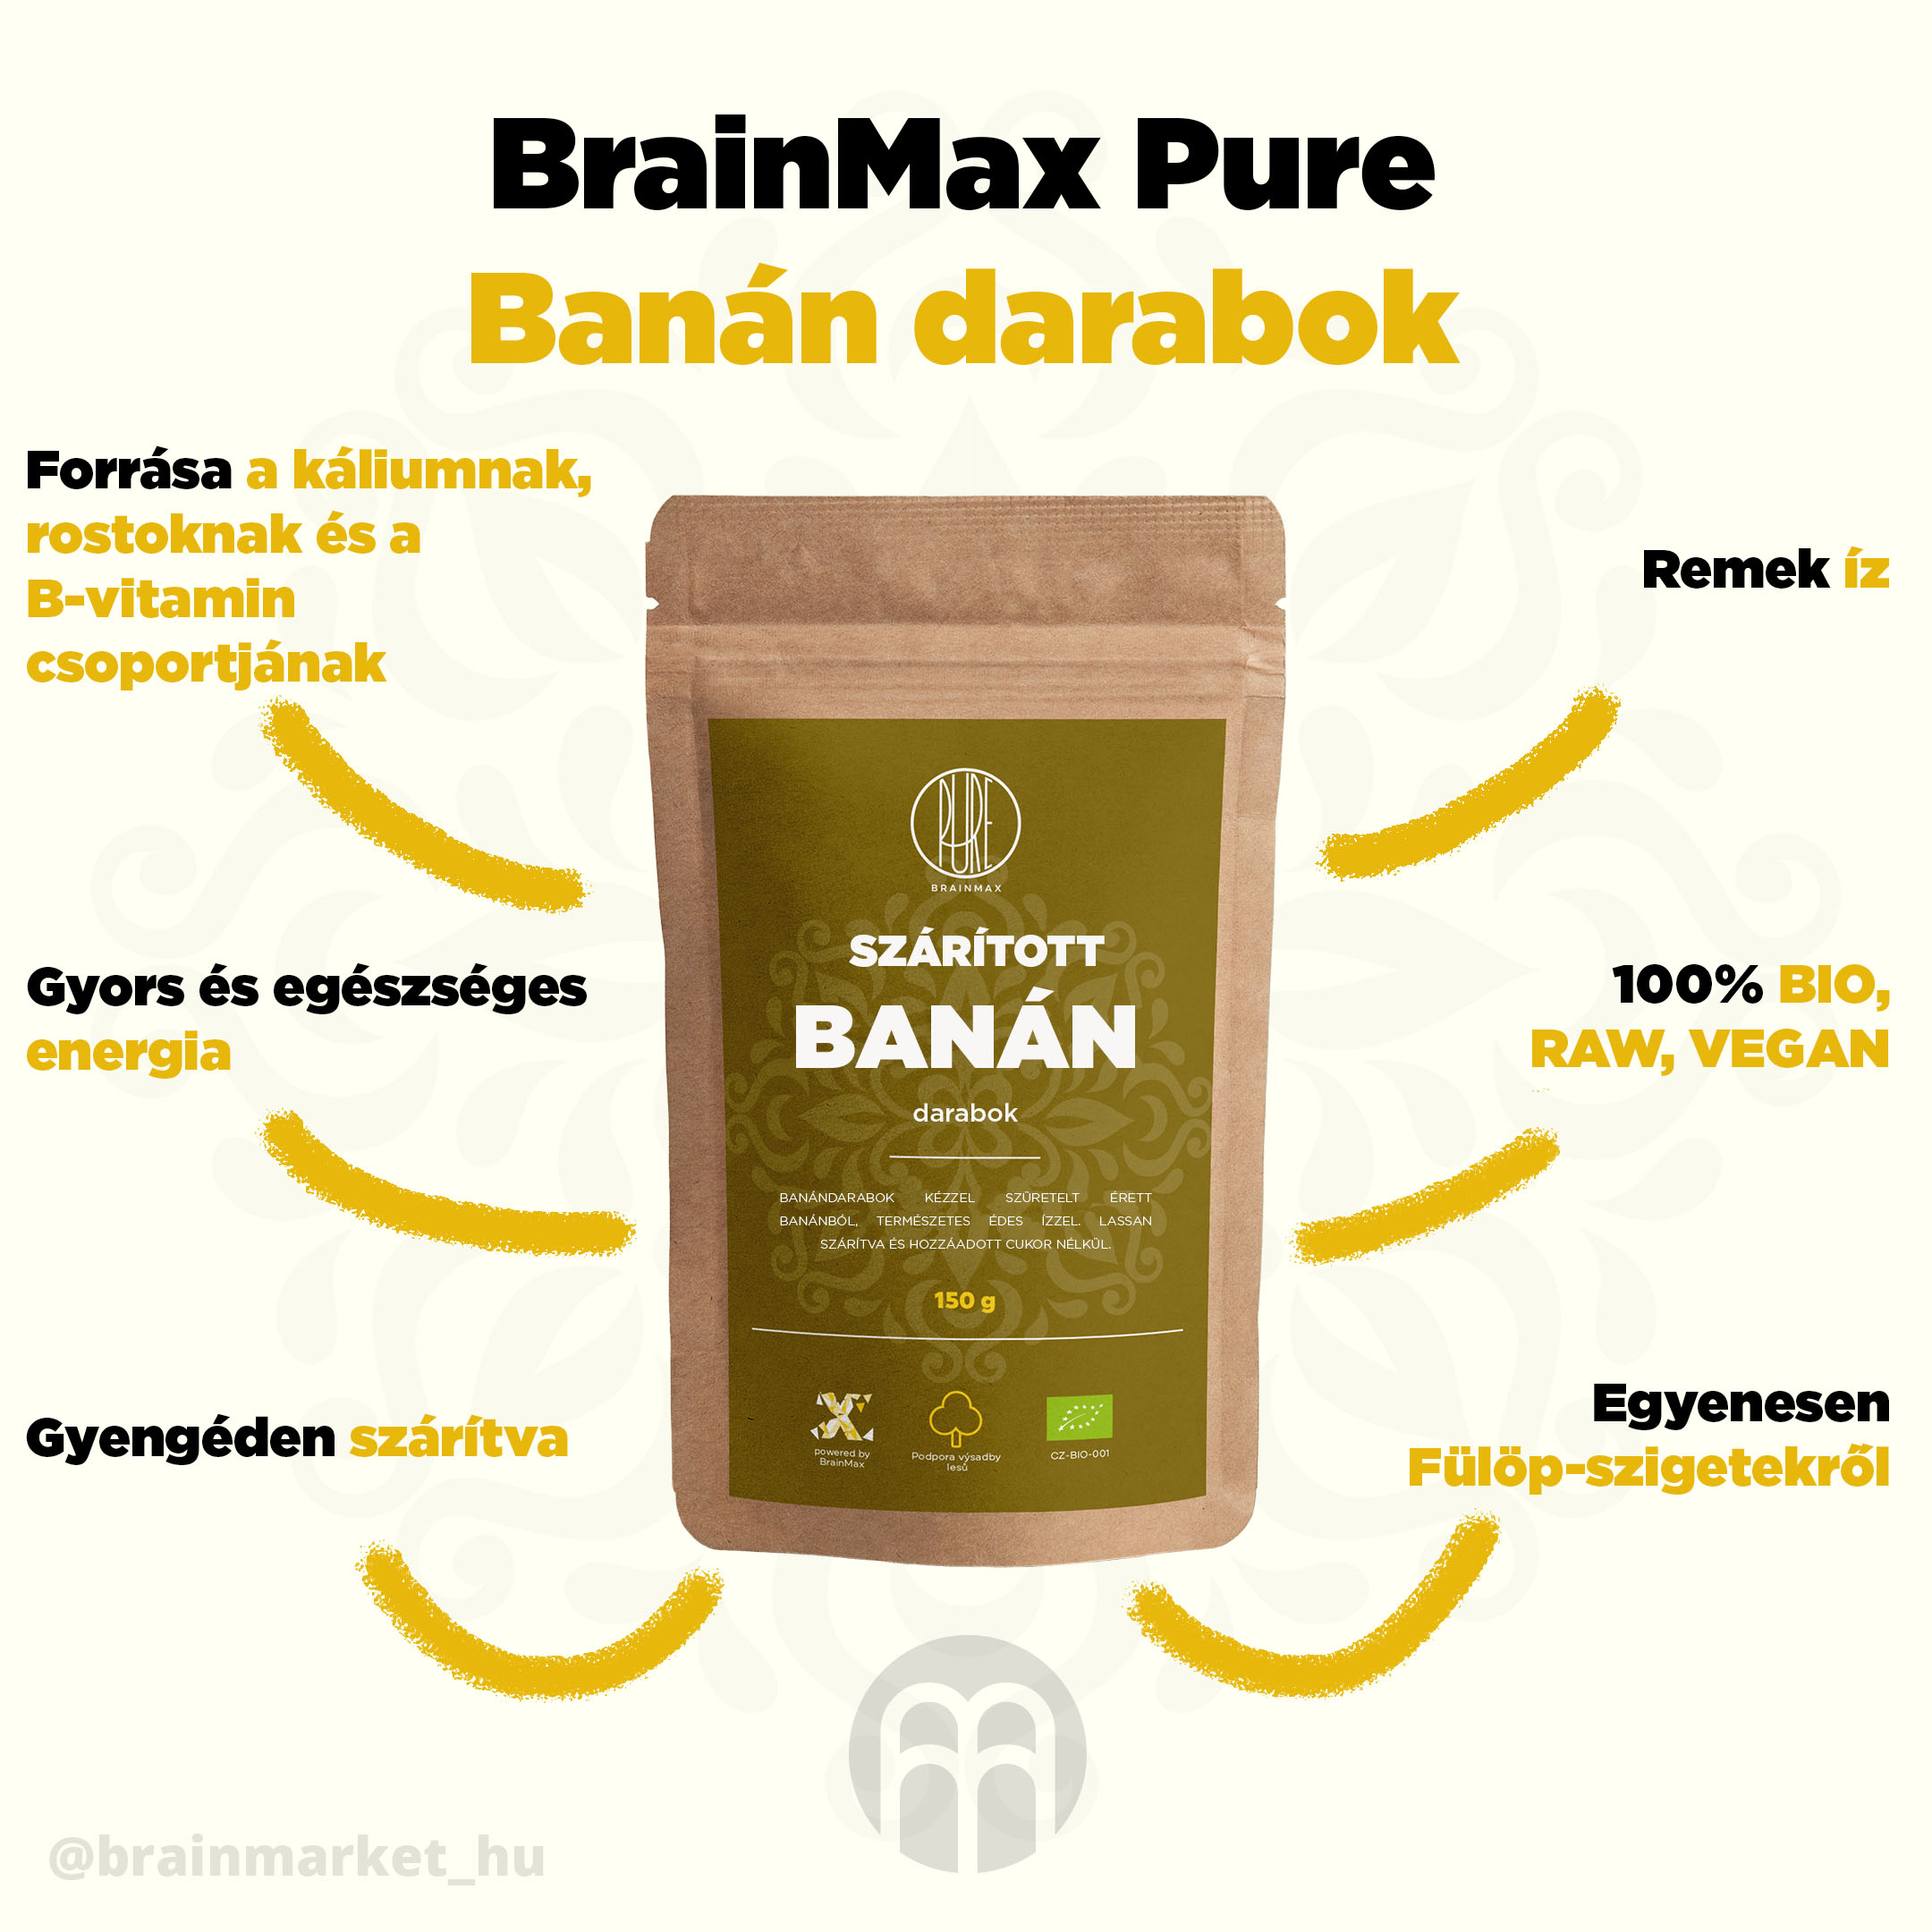 BrainMax tiszta banándarabok szárítva - BrainMarket.cz